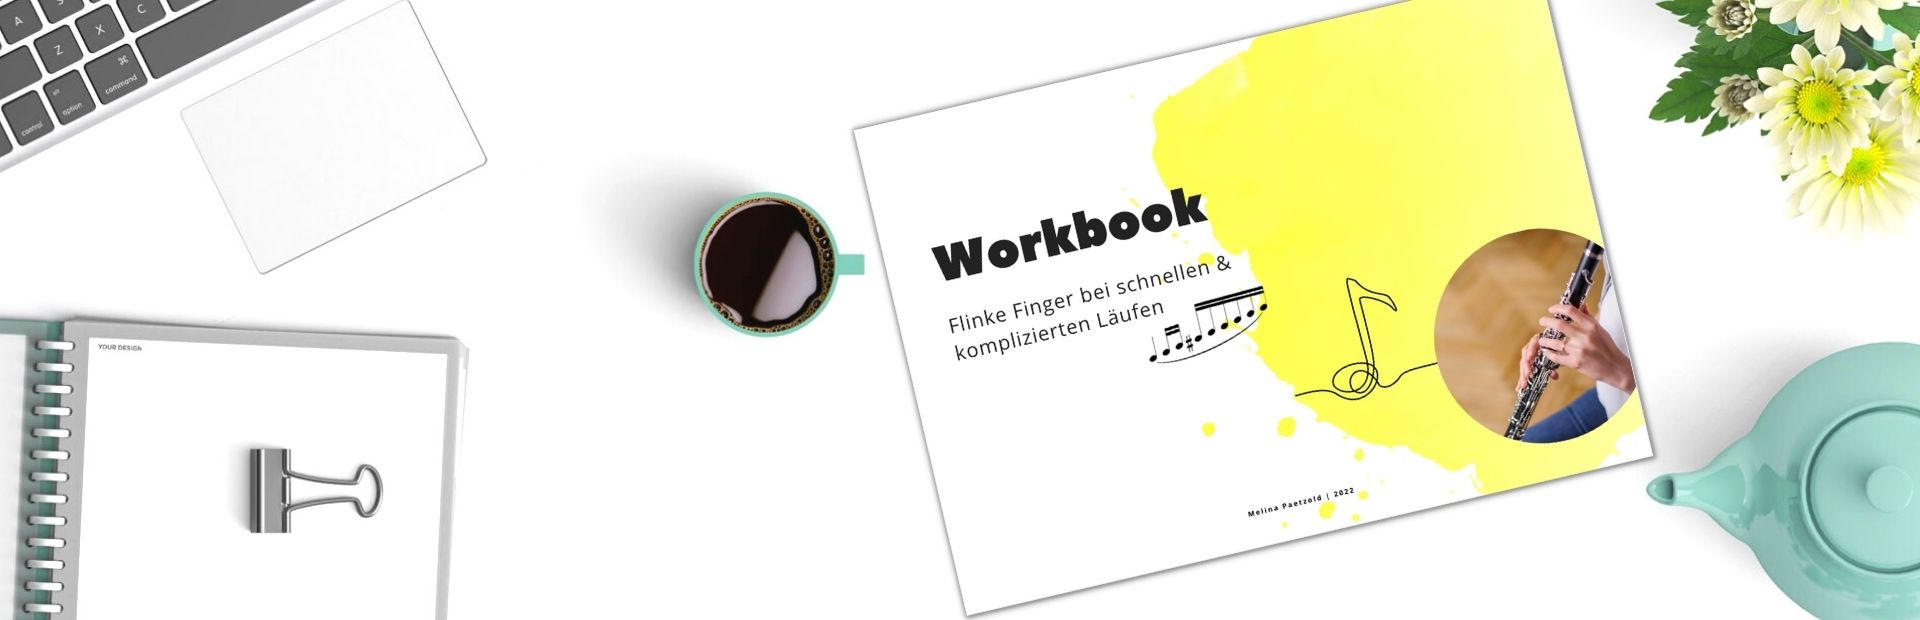 workbook online workshop schnelle läufe melinapaetzold